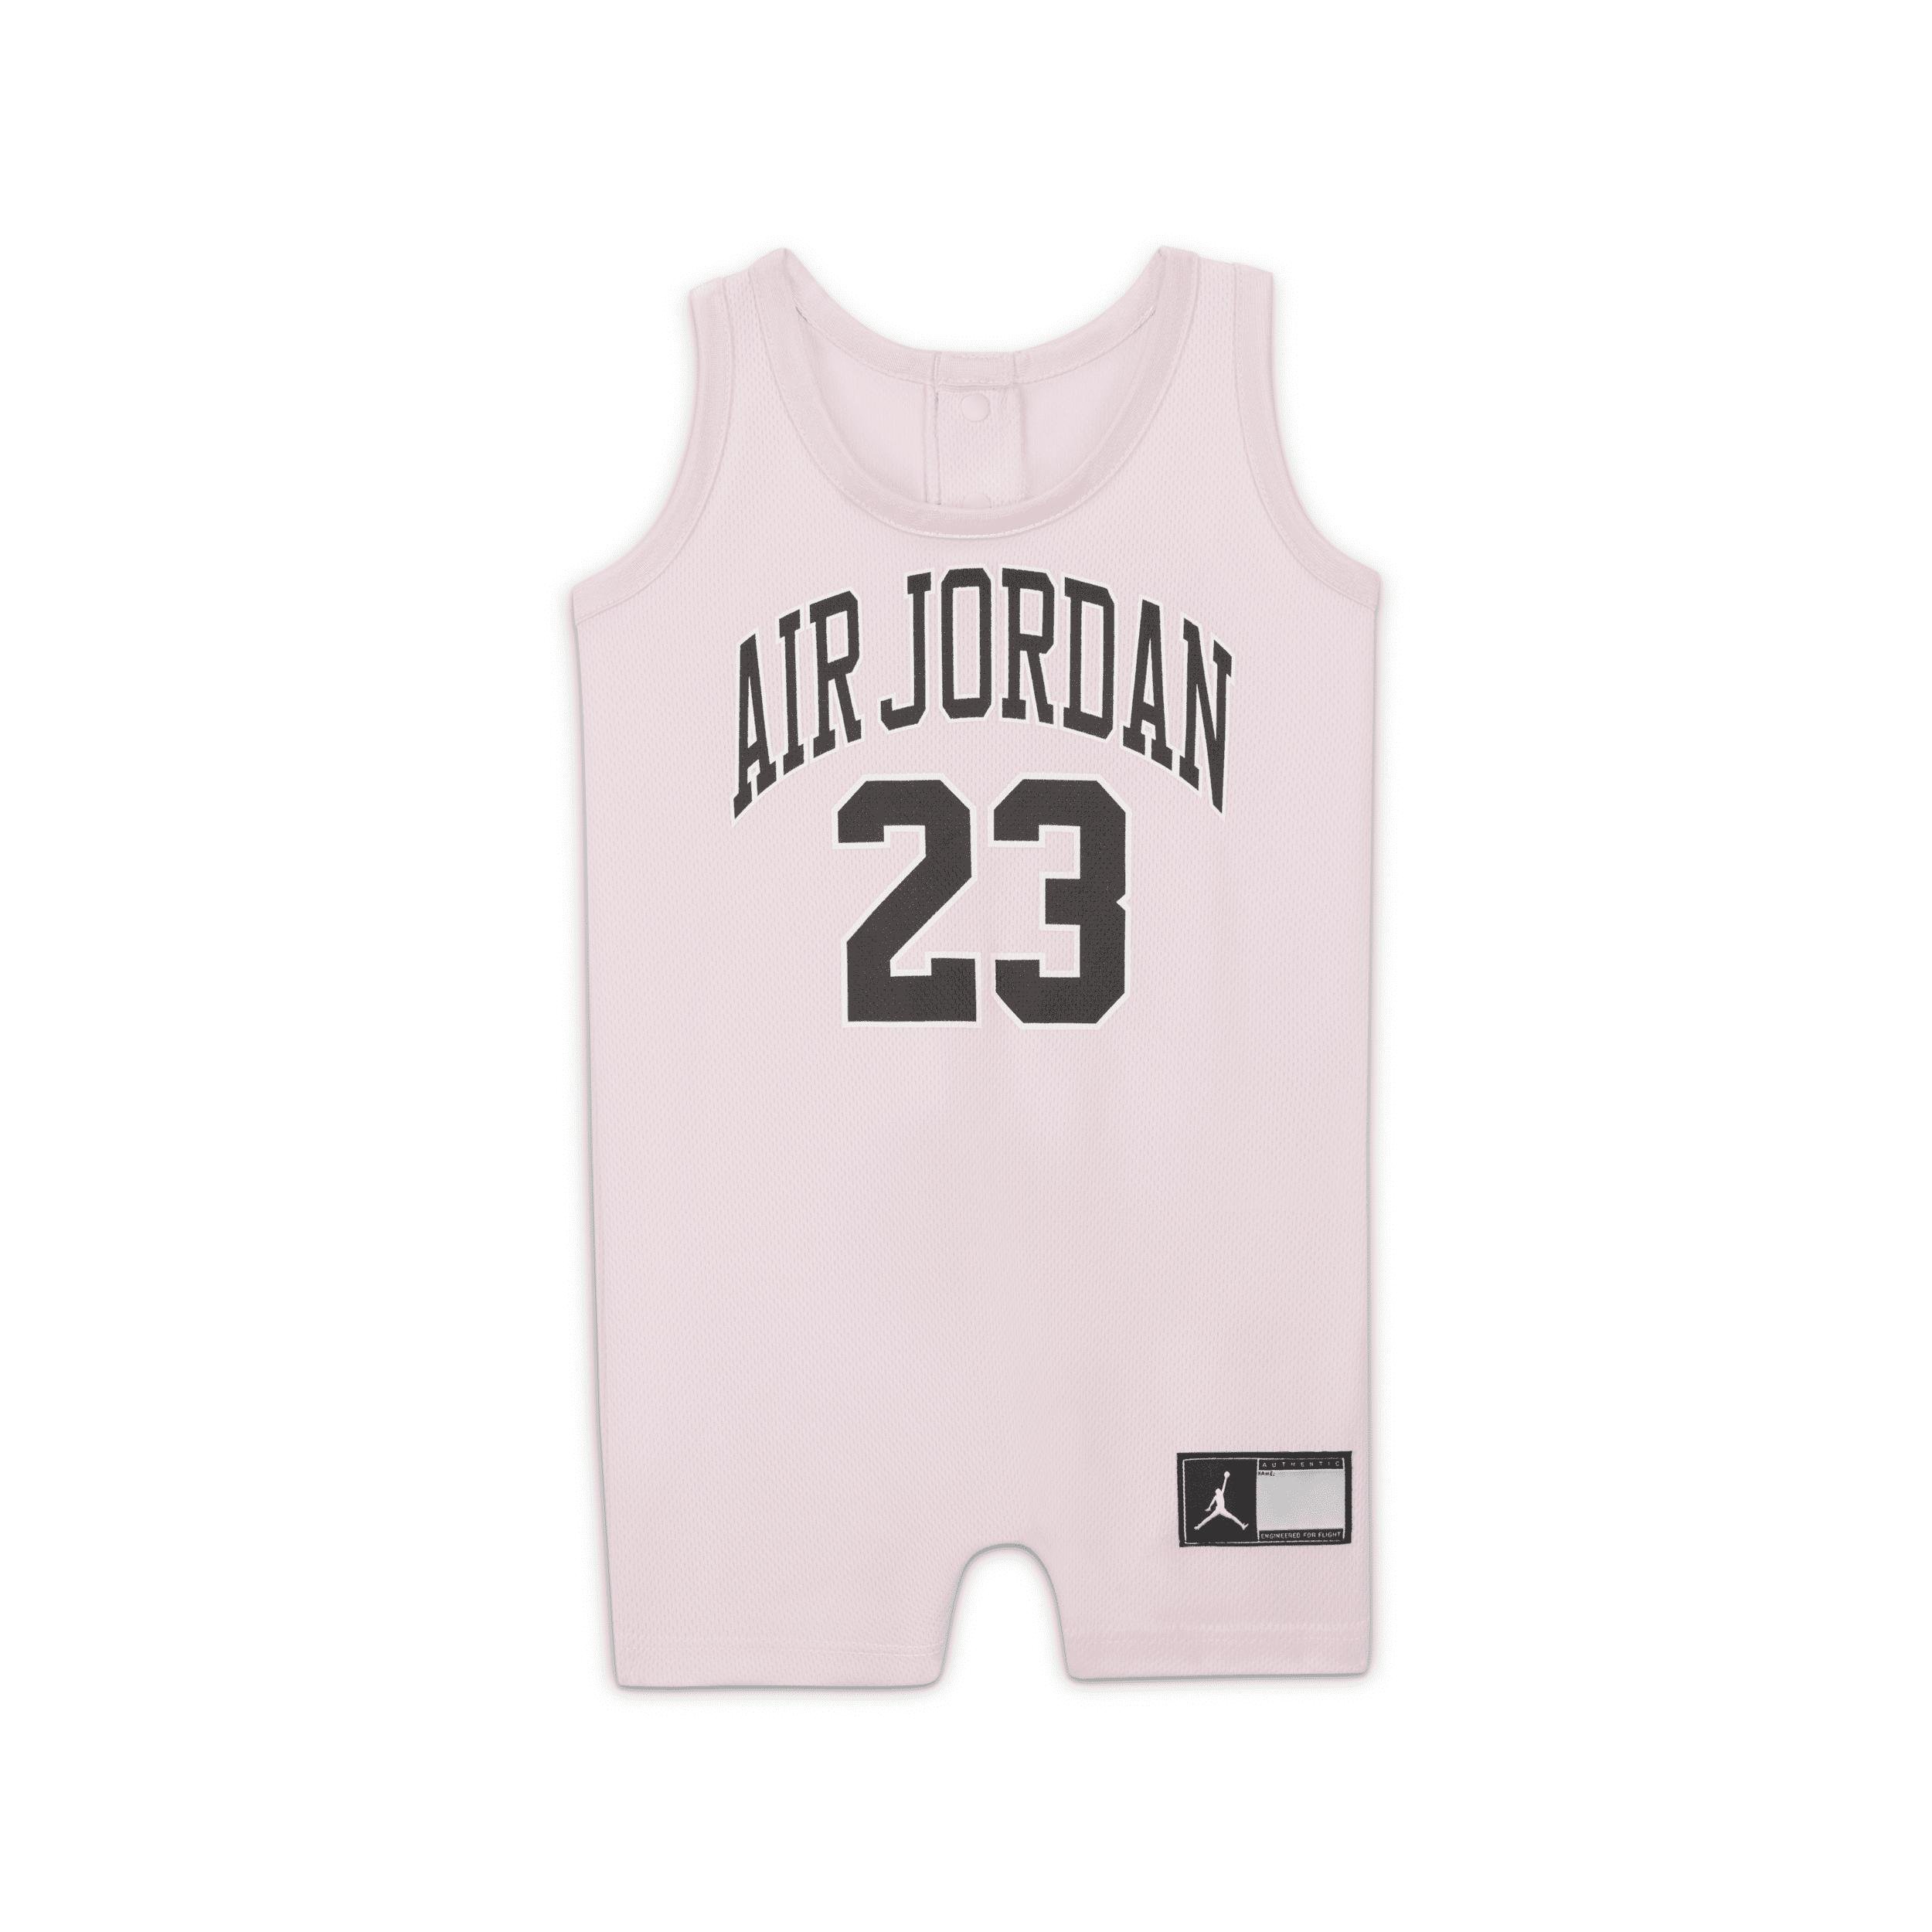 Jordan Baby (0-9M) Jersey Romper by JORDAN